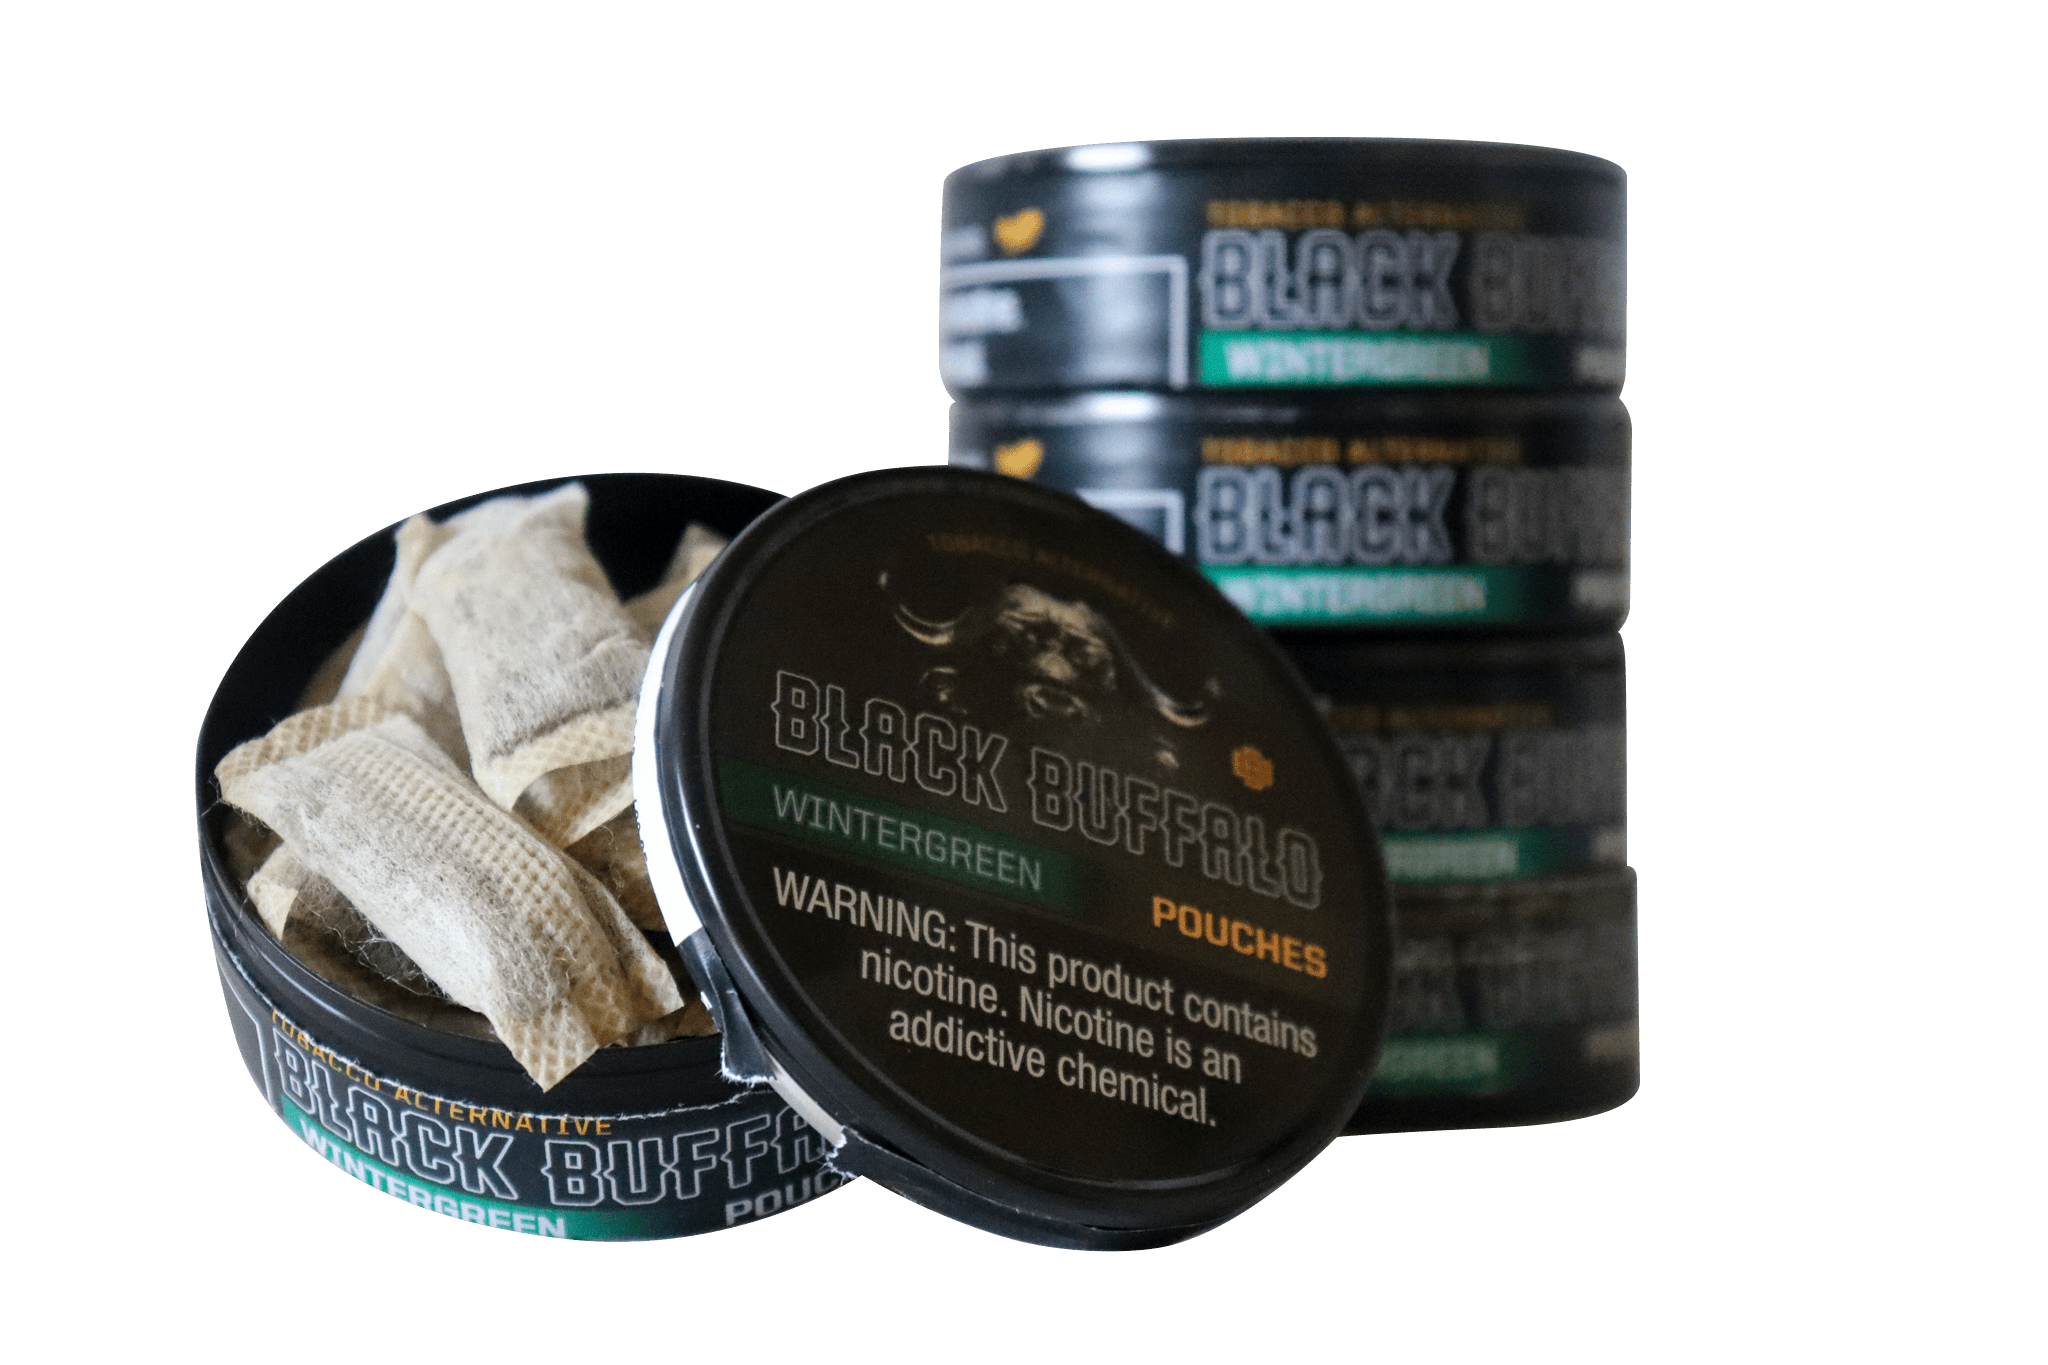 Black Buffalo Pouches / Wintergreen / 5-Pack Black Buffalo Nicotine